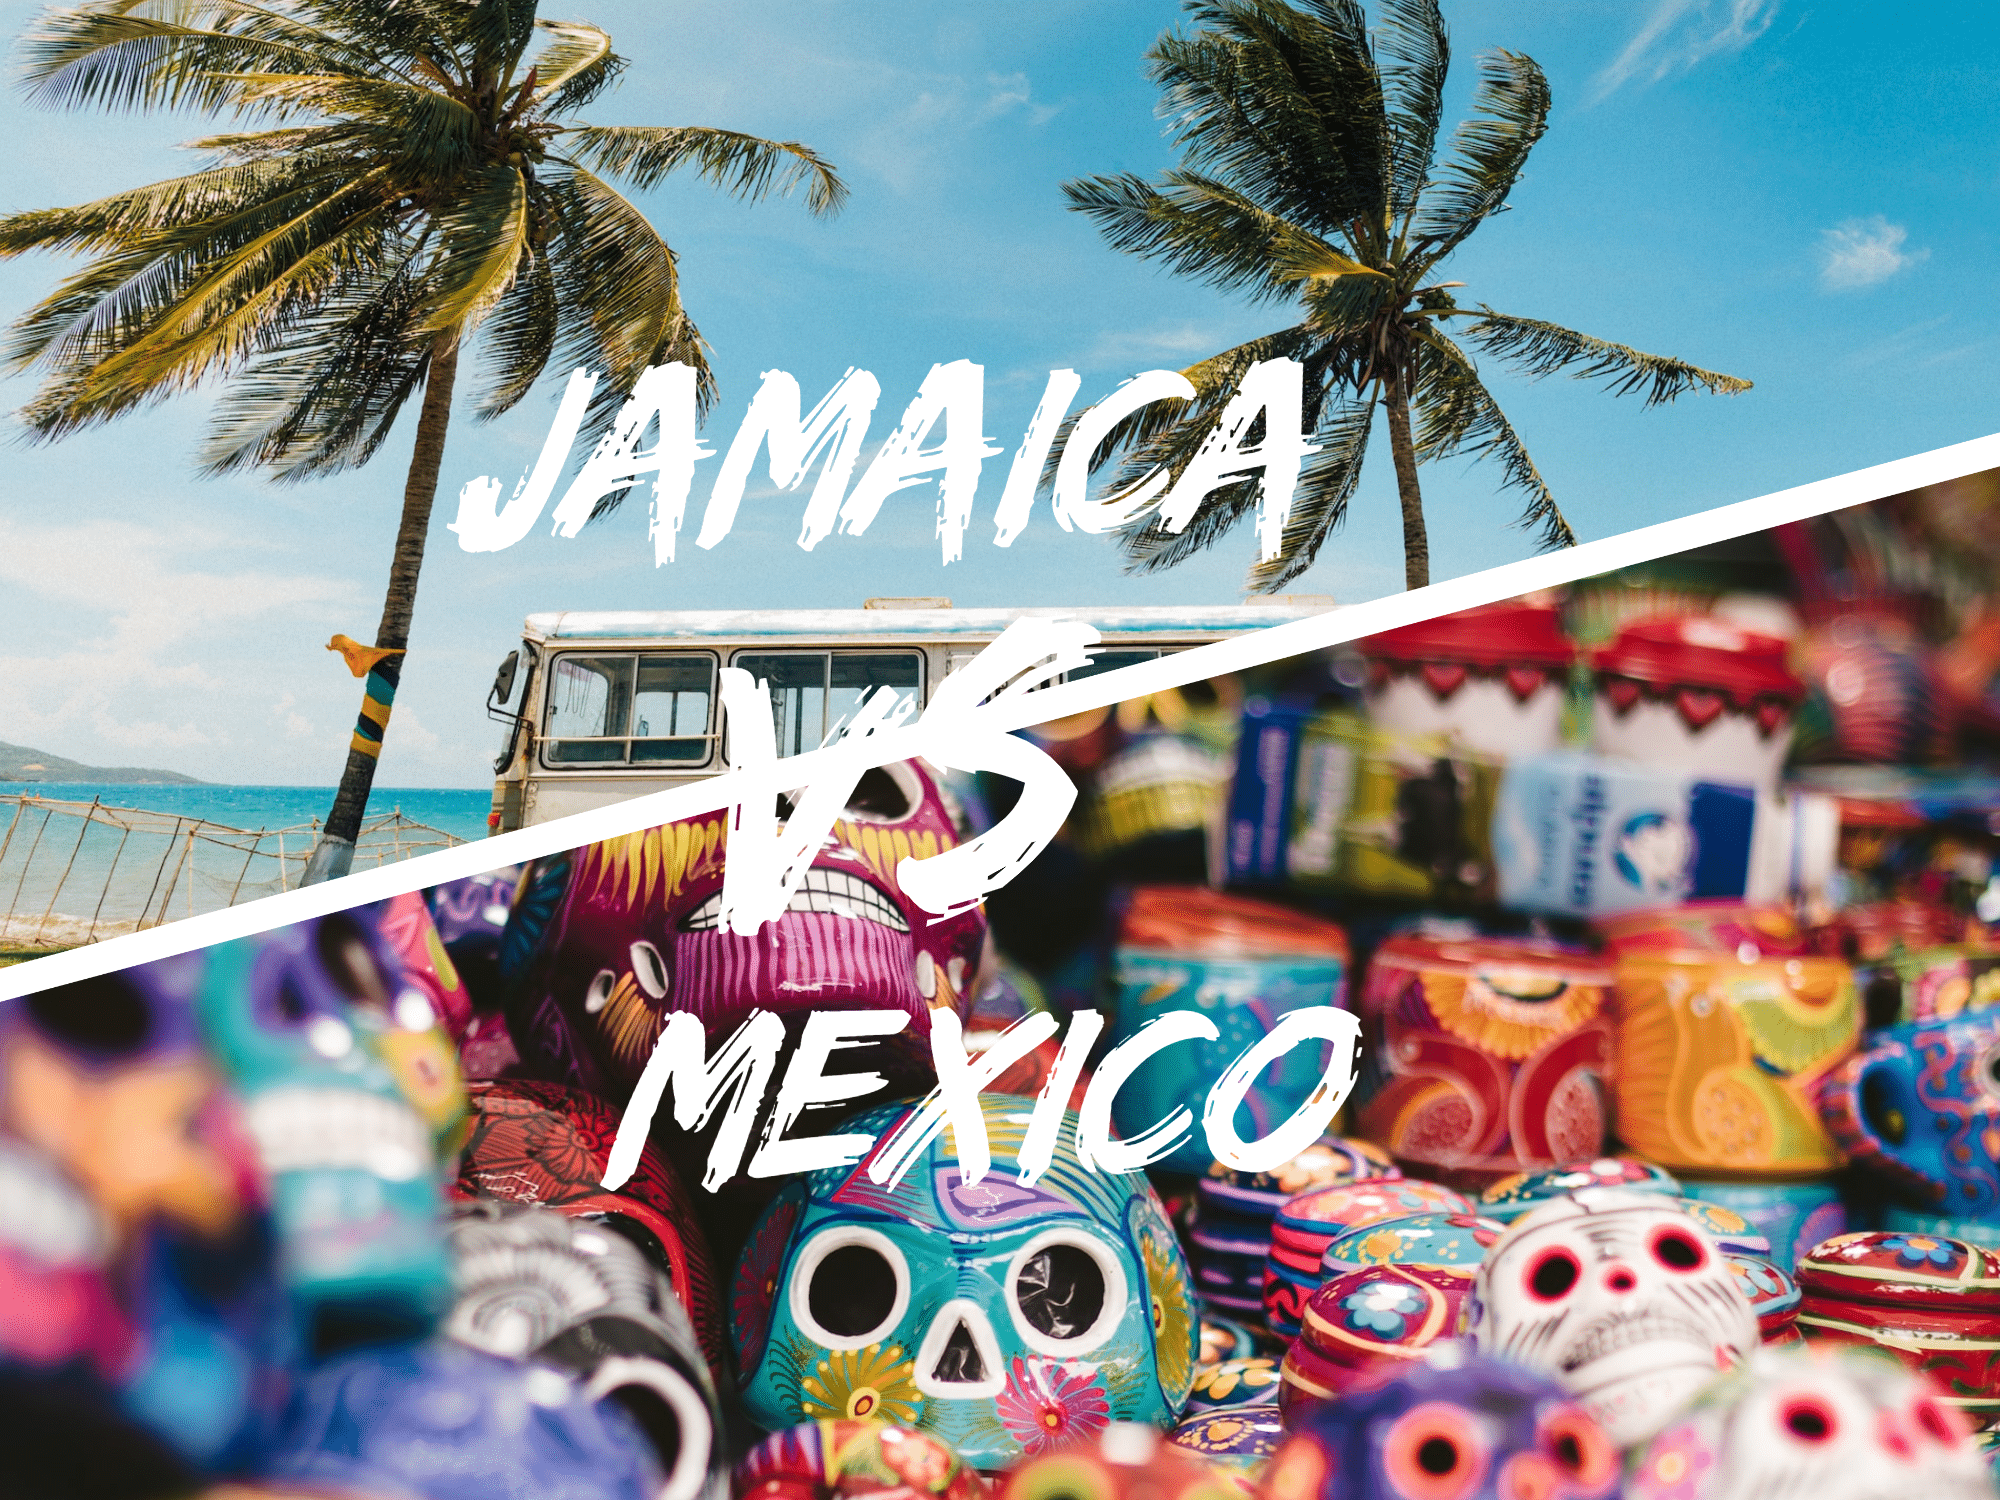 Jamaica vs Mexico: The ultimate Comparison